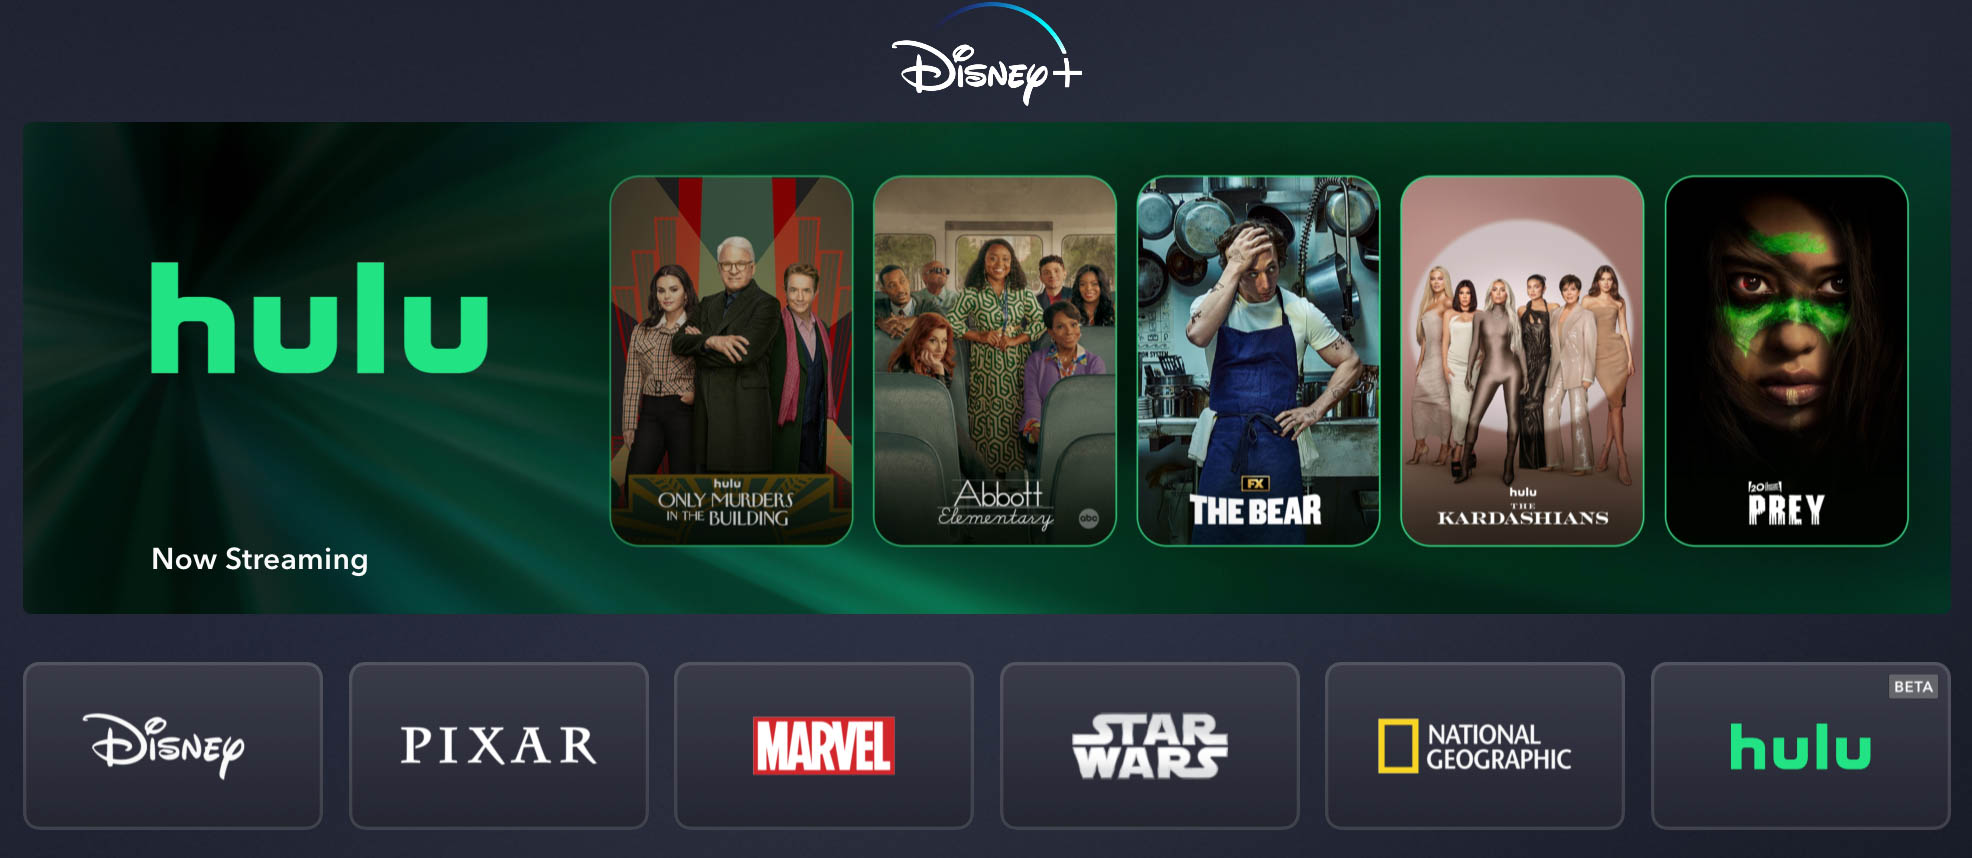 Disney+/Hulu